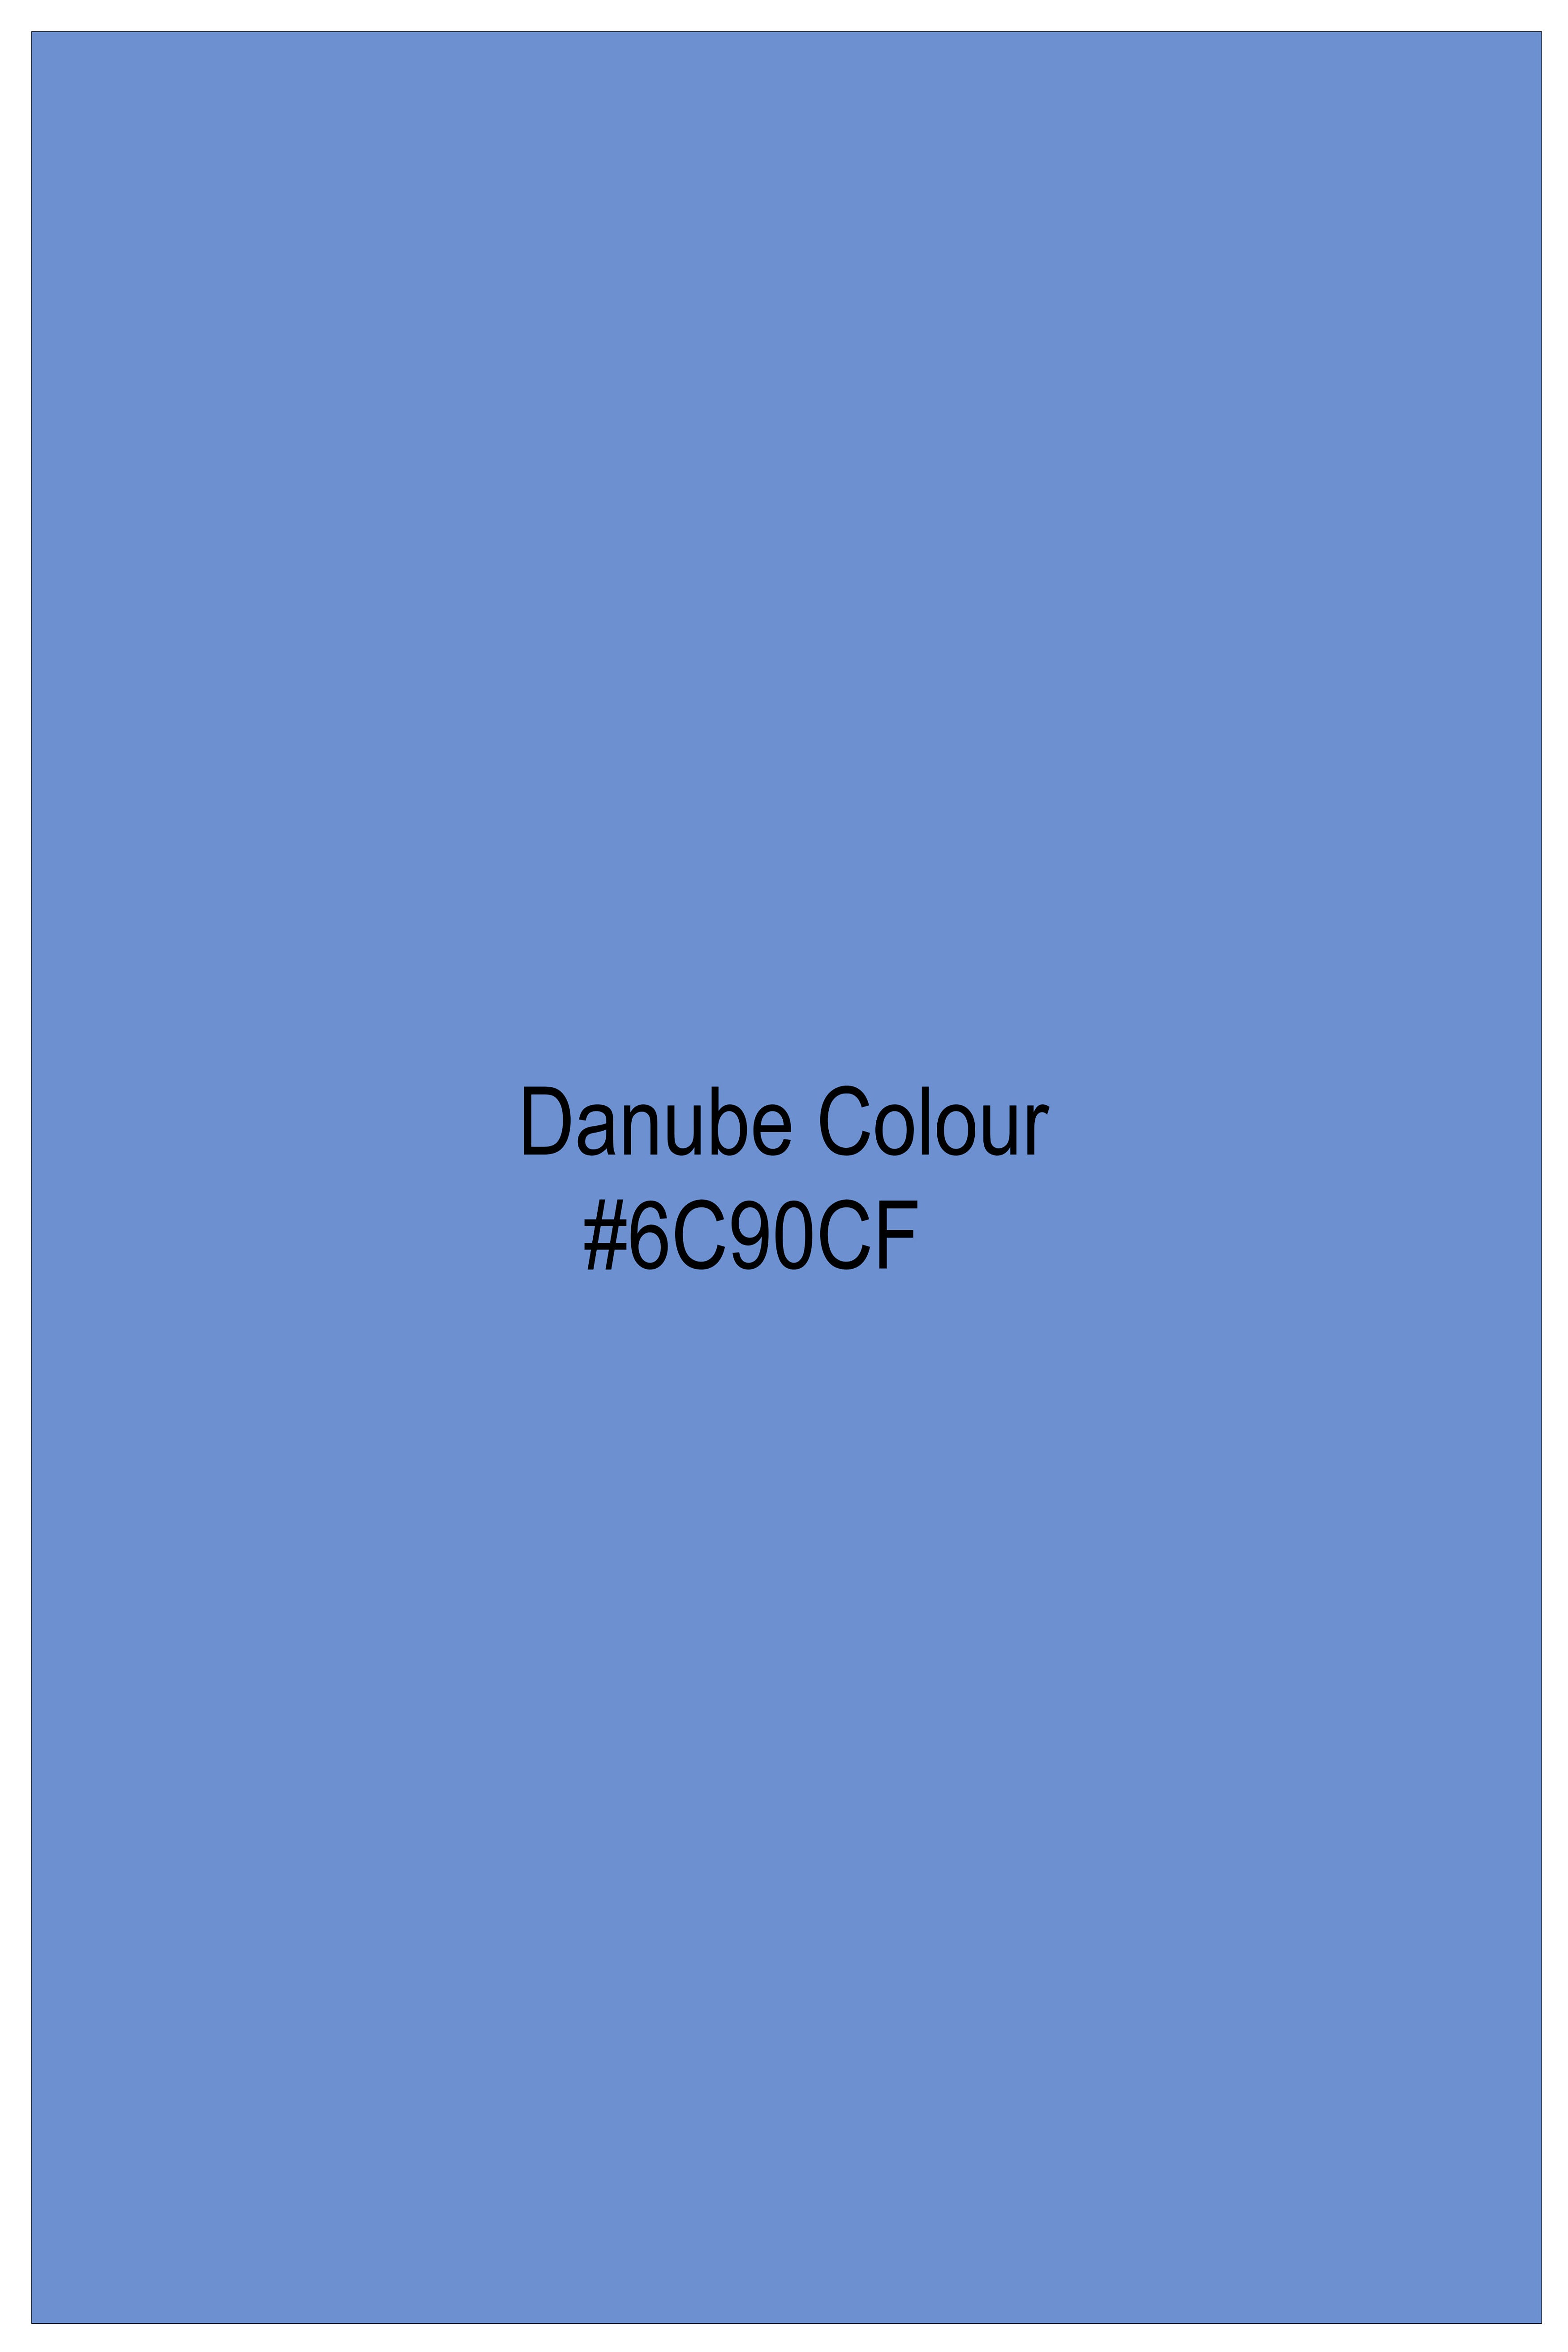 Danube Sky Blue Luxurious Linen Shirt